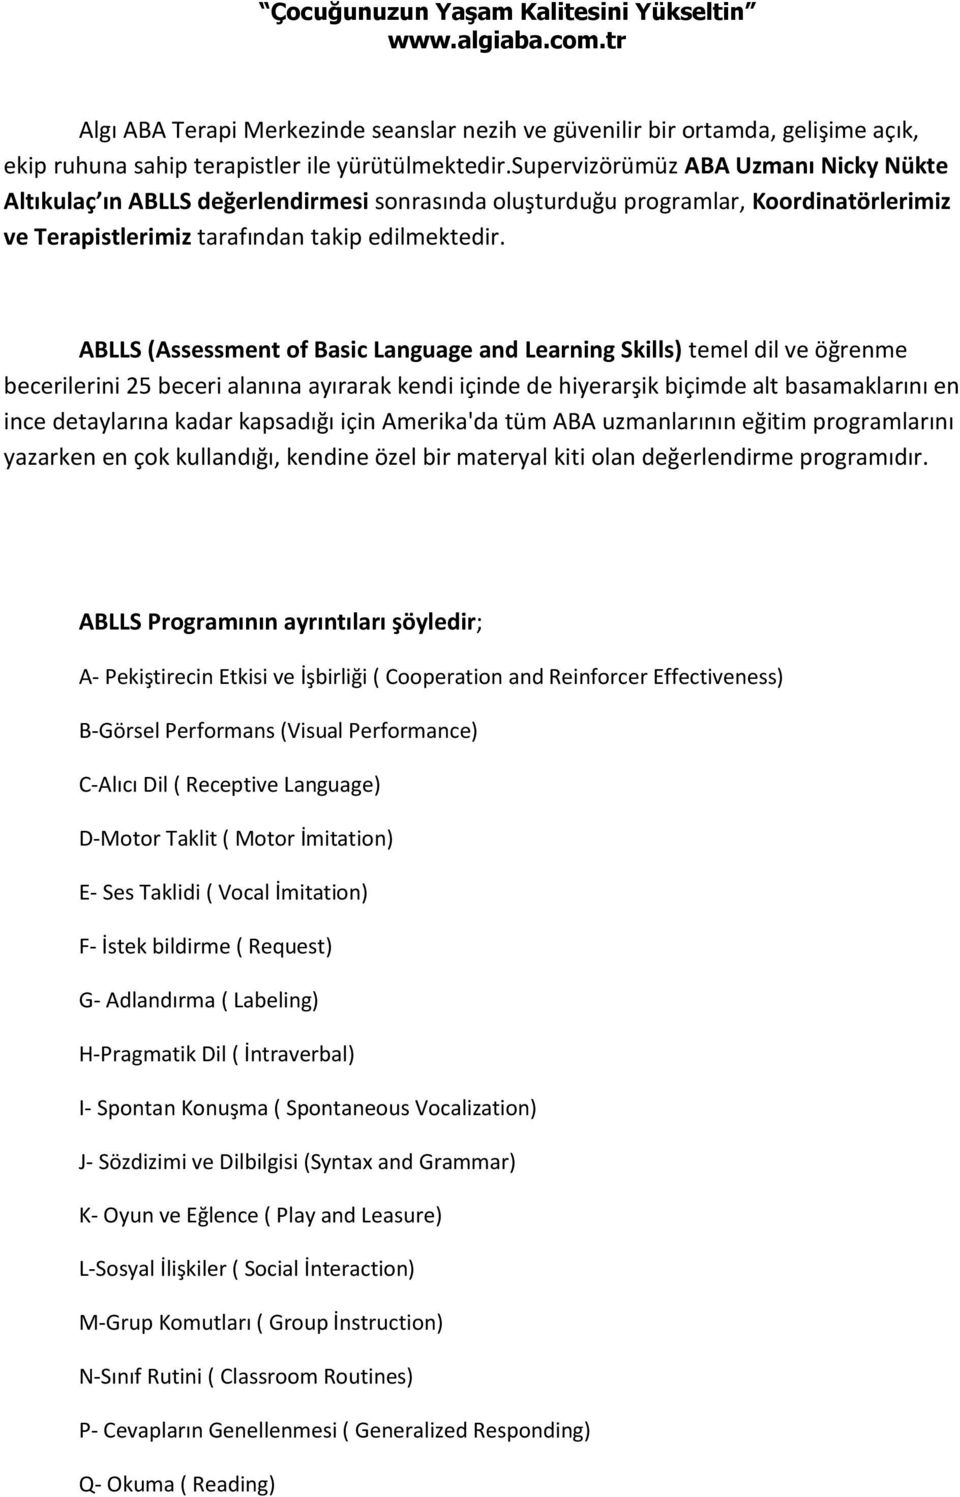 ABLLS (Assessment of Basic Language and Learning Skills) temel dil ve öğrenme becerilerini 25 beceri alanına ayırarak kendi içinde de hiyerarşik biçimde alt basamaklarını en ince detaylarına kadar